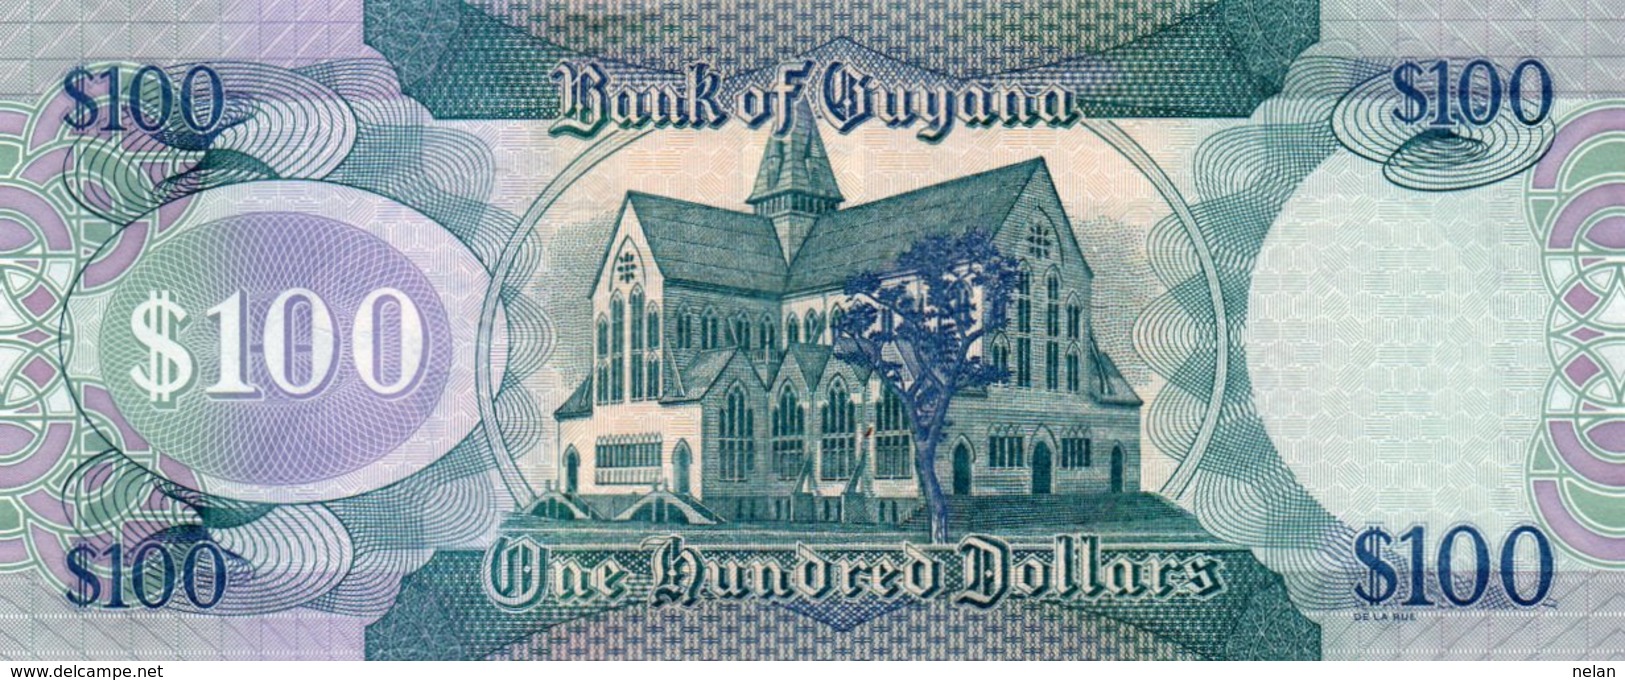 GUYANA 100 DOLLARS 2009  P-36b.1  UNC - Guyana